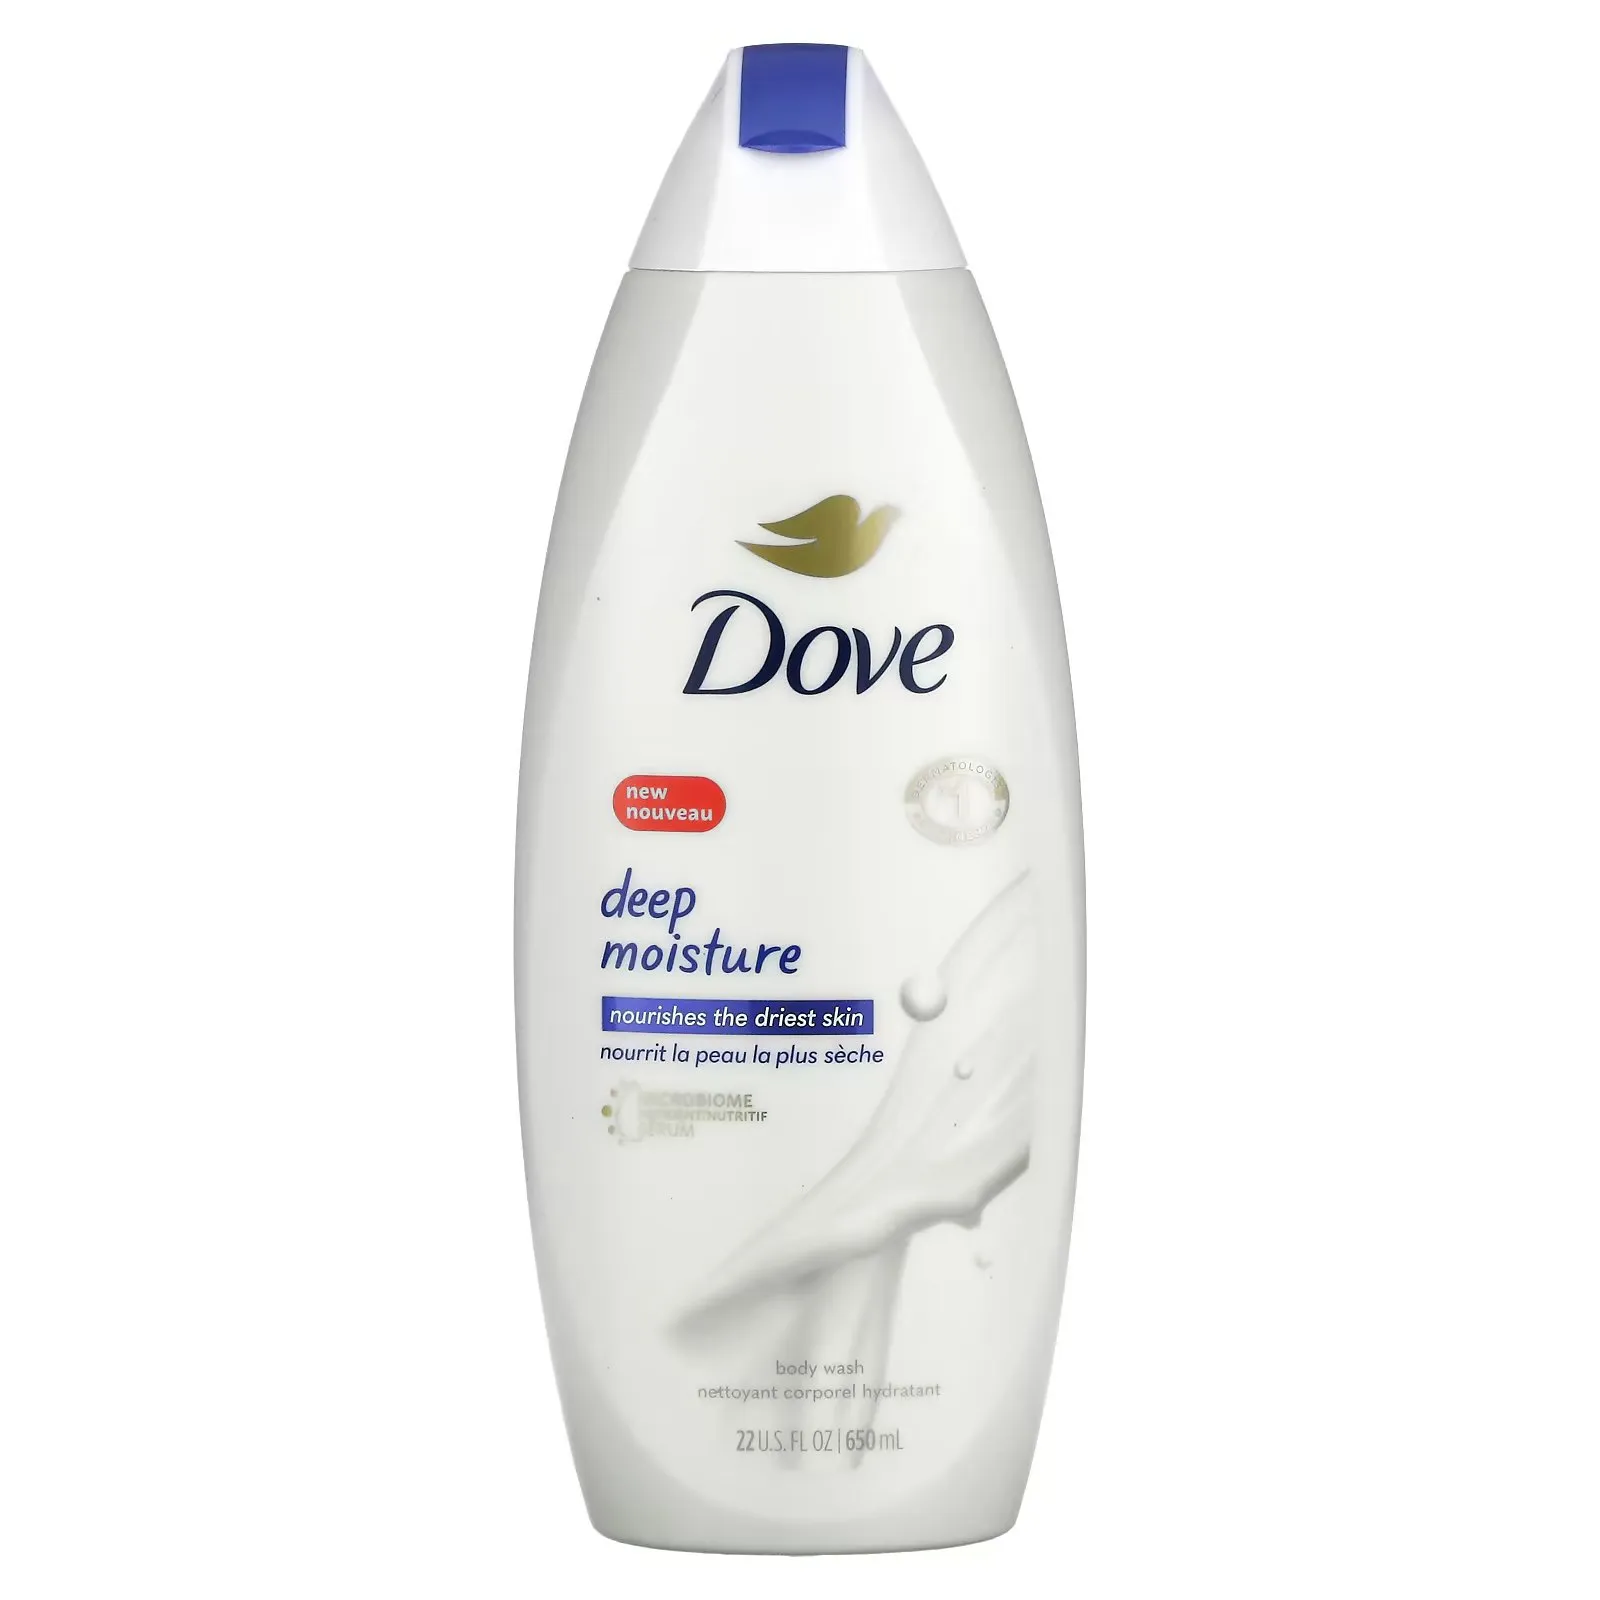 FEMMENORDIC's choice in the Nivea vs Dove comparison, the Dove Deep Moisture Body Wash